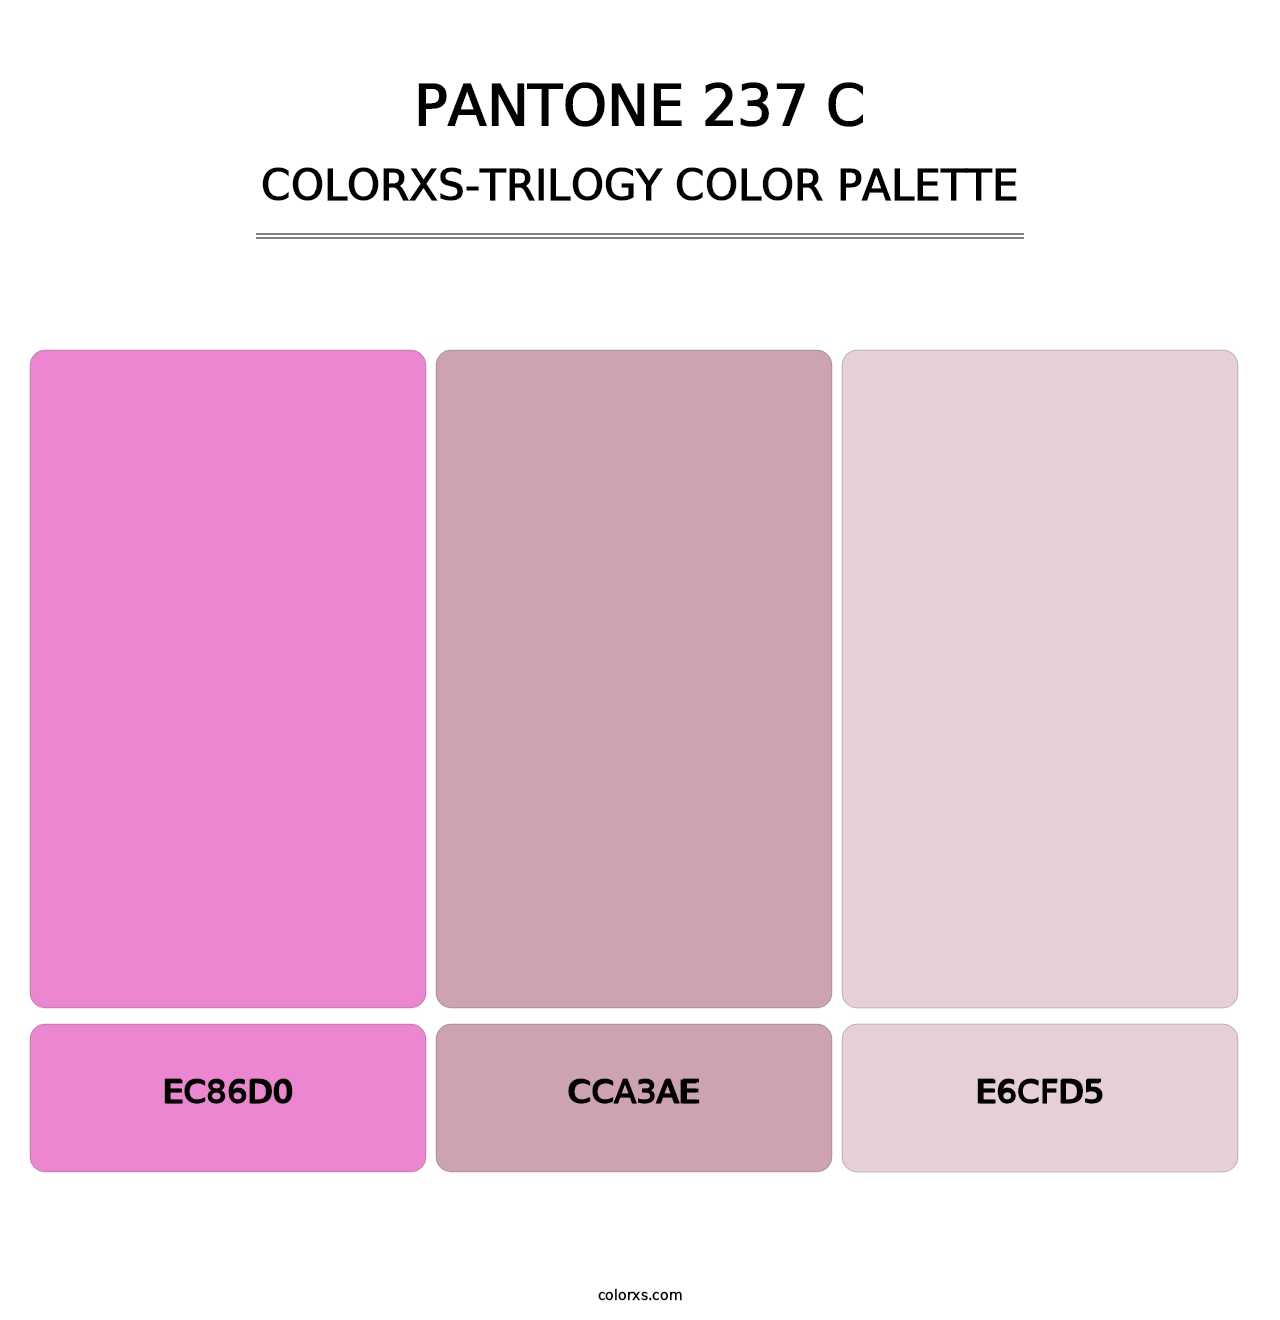 PANTONE 237 C - Colorxs Trilogy Palette